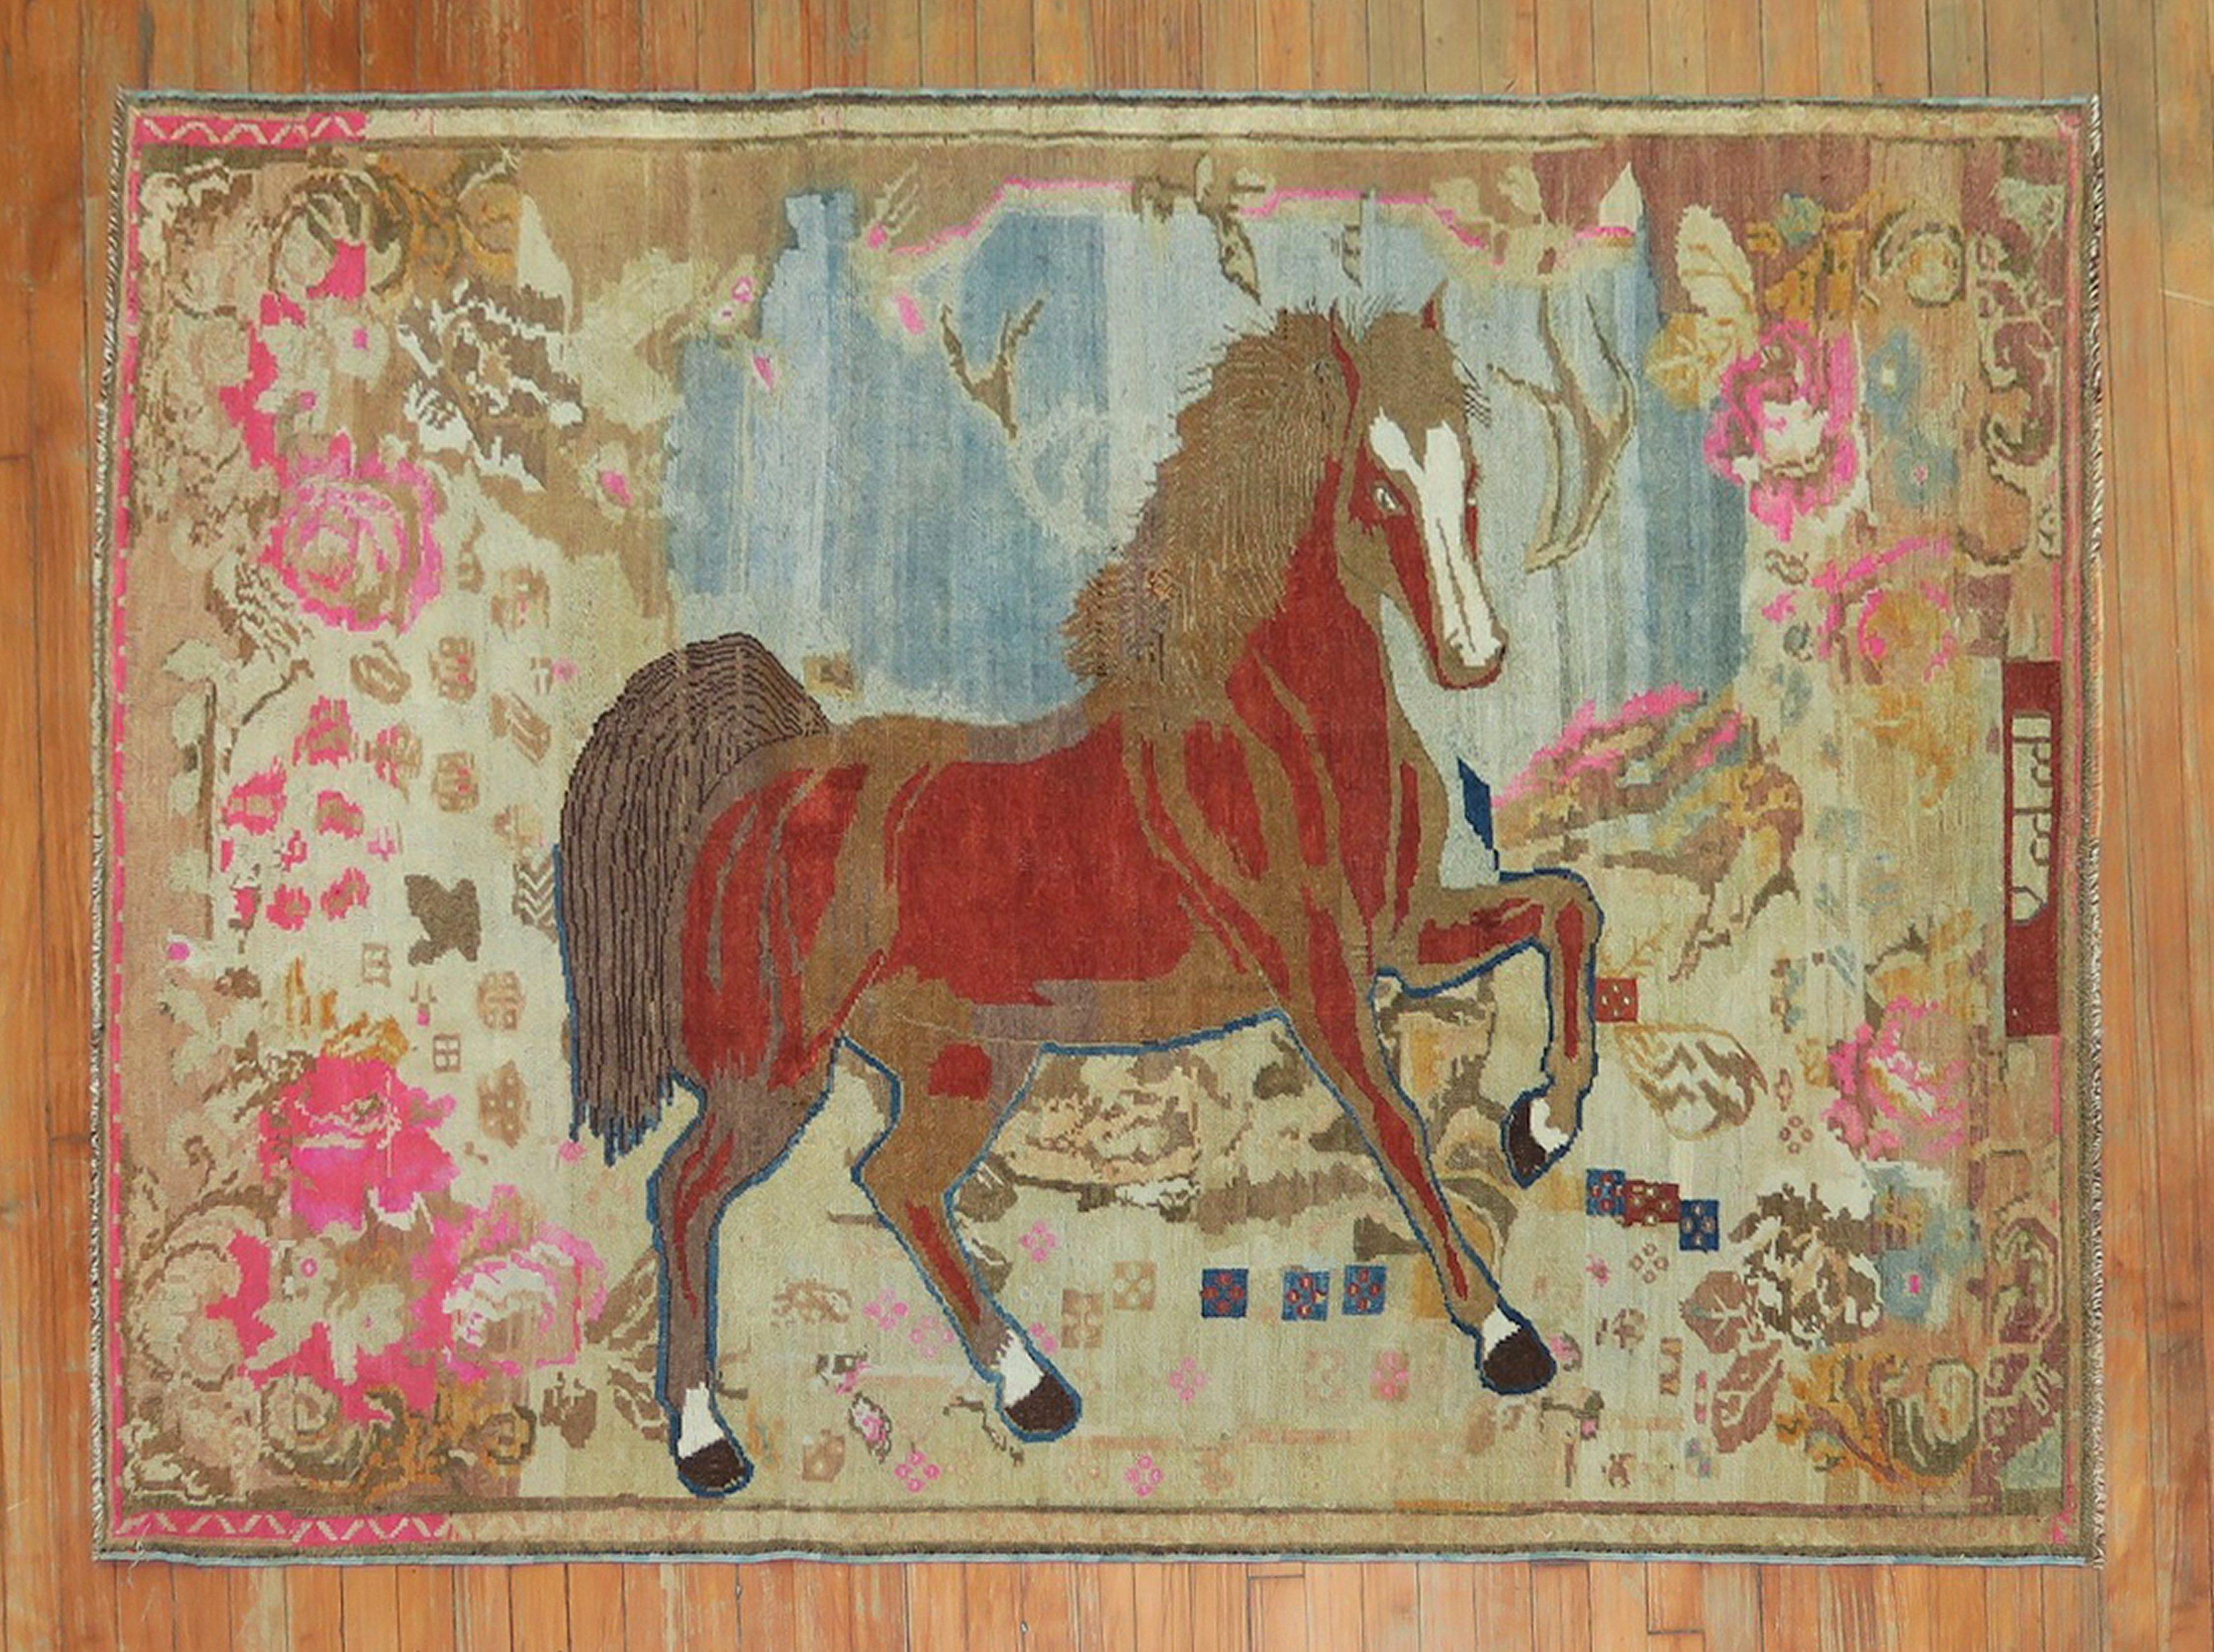 Merveilleux tapis pictural russe Karabagh, unique en son genre, représentant un grand, audacieux et beau cheval sur un fond floral avec des couleurs d'accentuation prédominantes en bleu clair, rose vif et brun. Les détails, la texture, la laine et